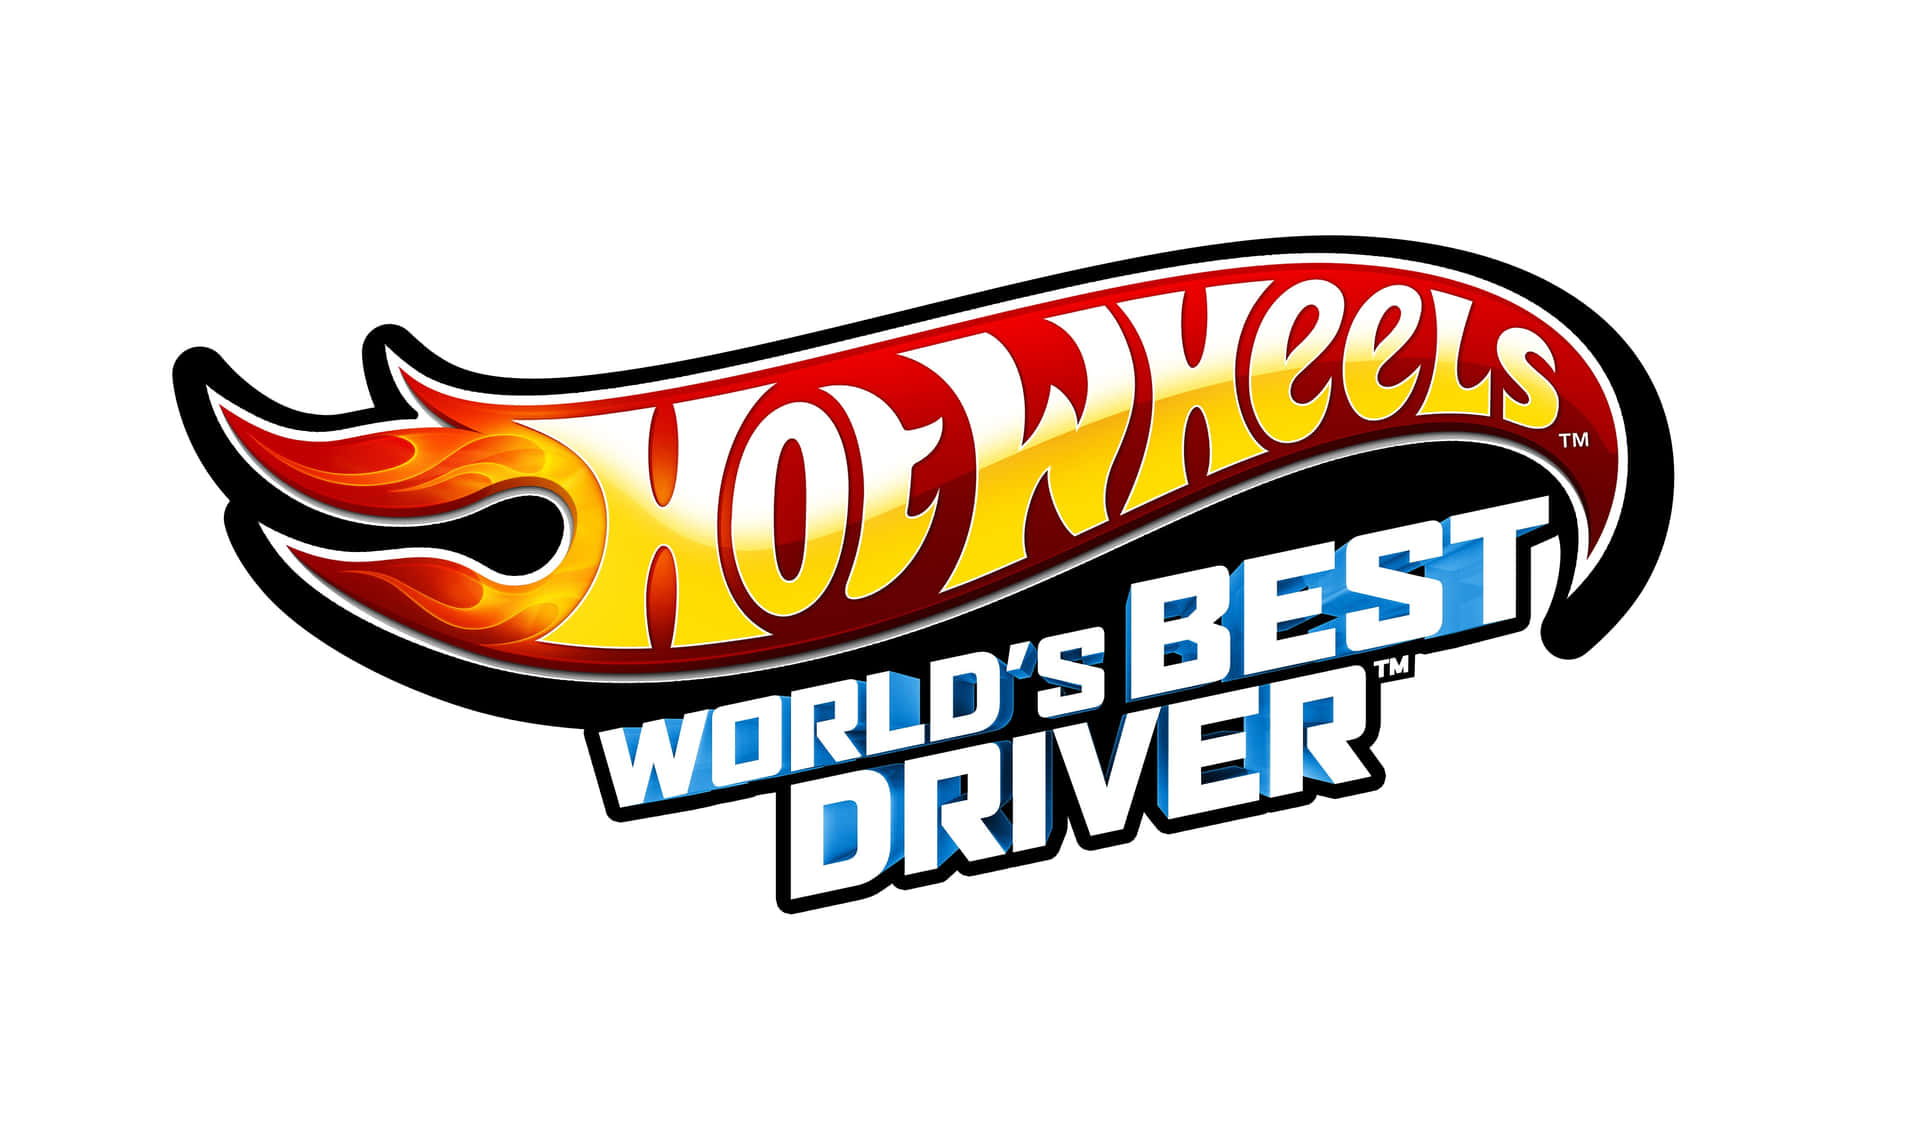 Hotwheels Weltbester Fahrer